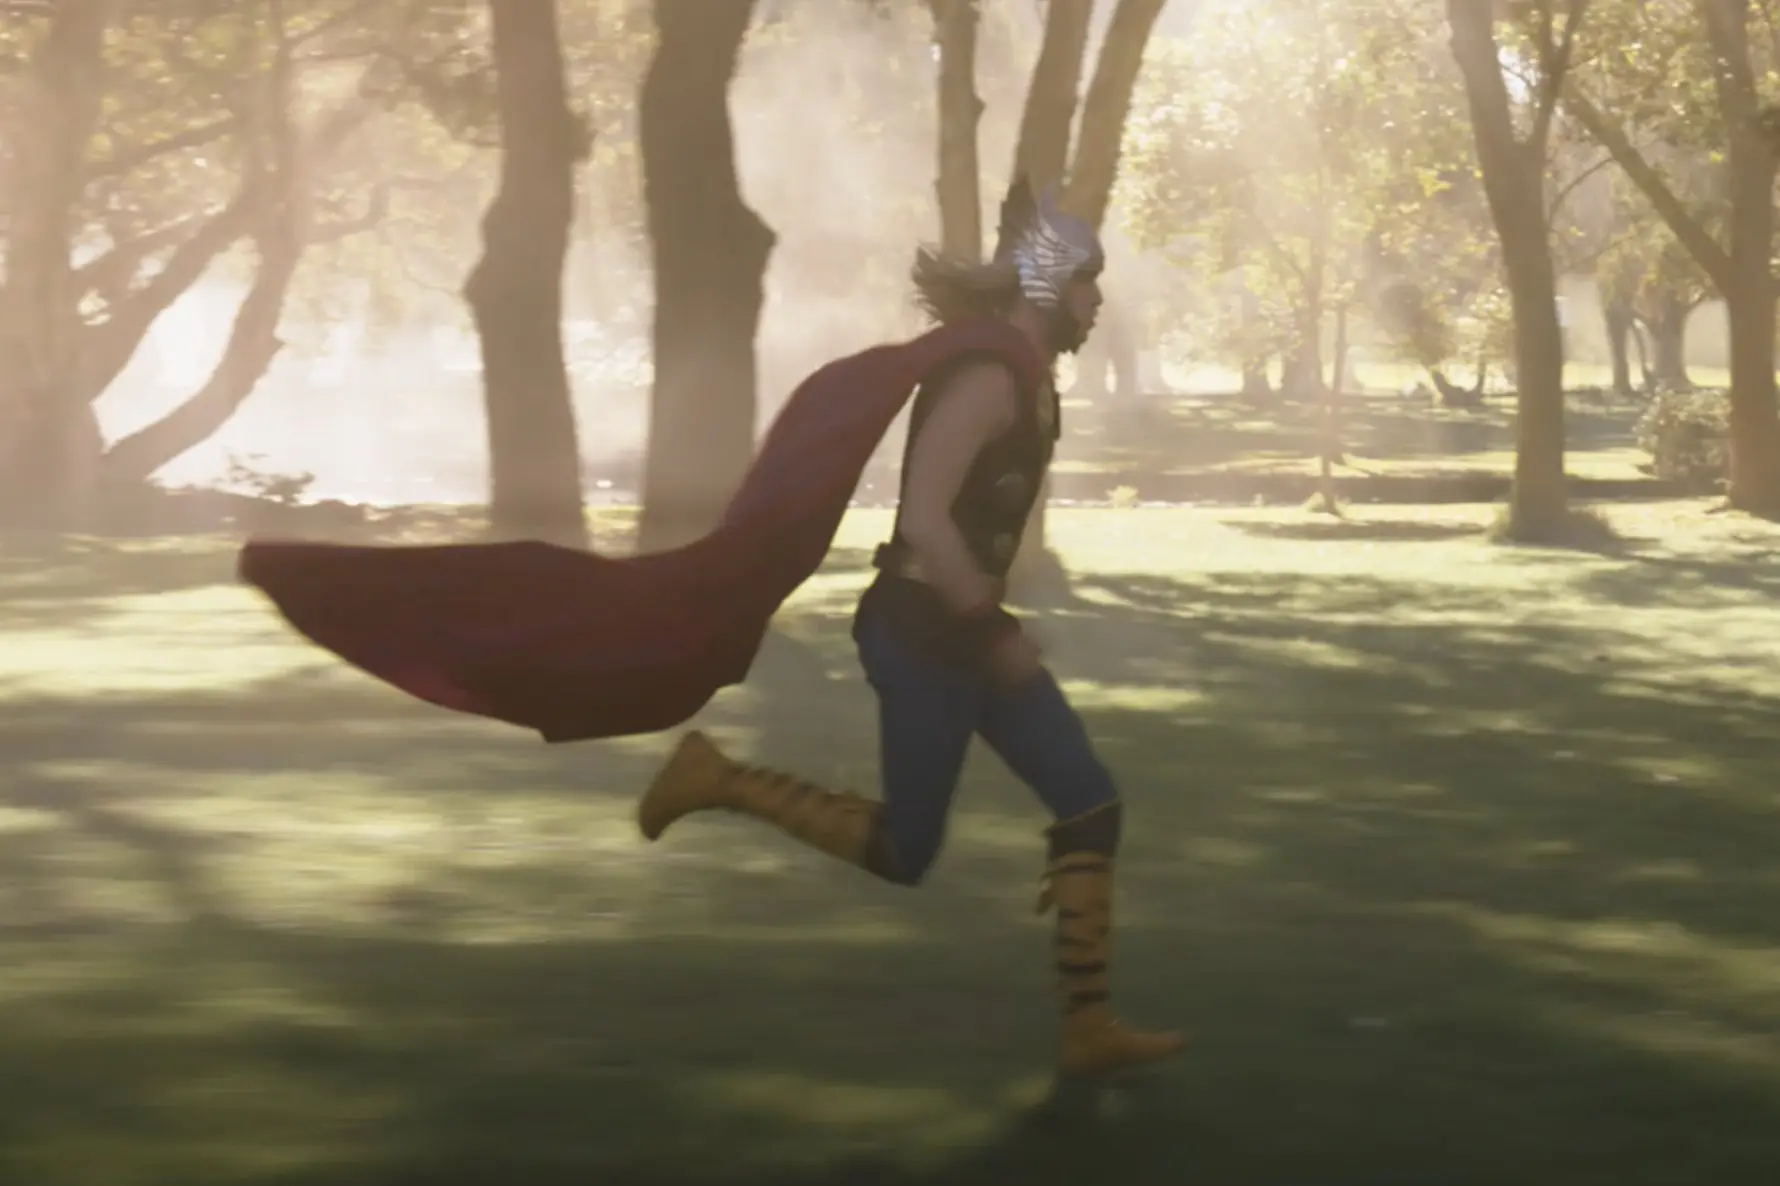 Cena do trailer de Thor 4.